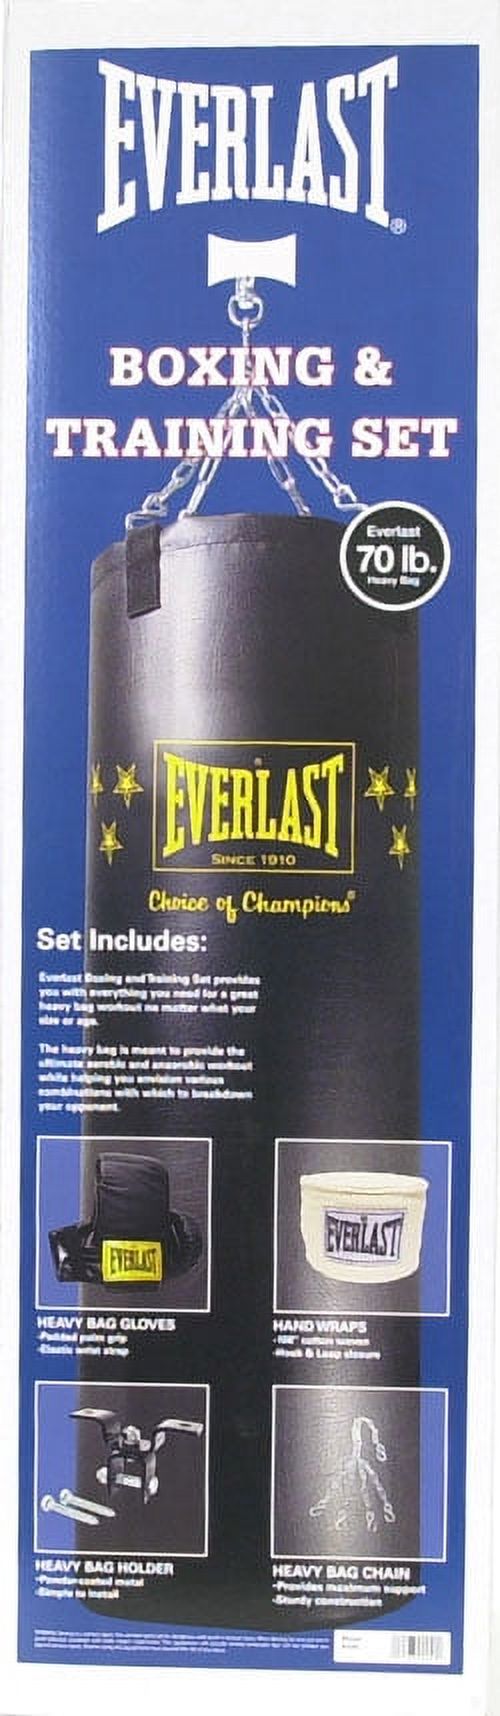 Everlast 70 lbs. Heavy Bag Kit - image 2 of 5